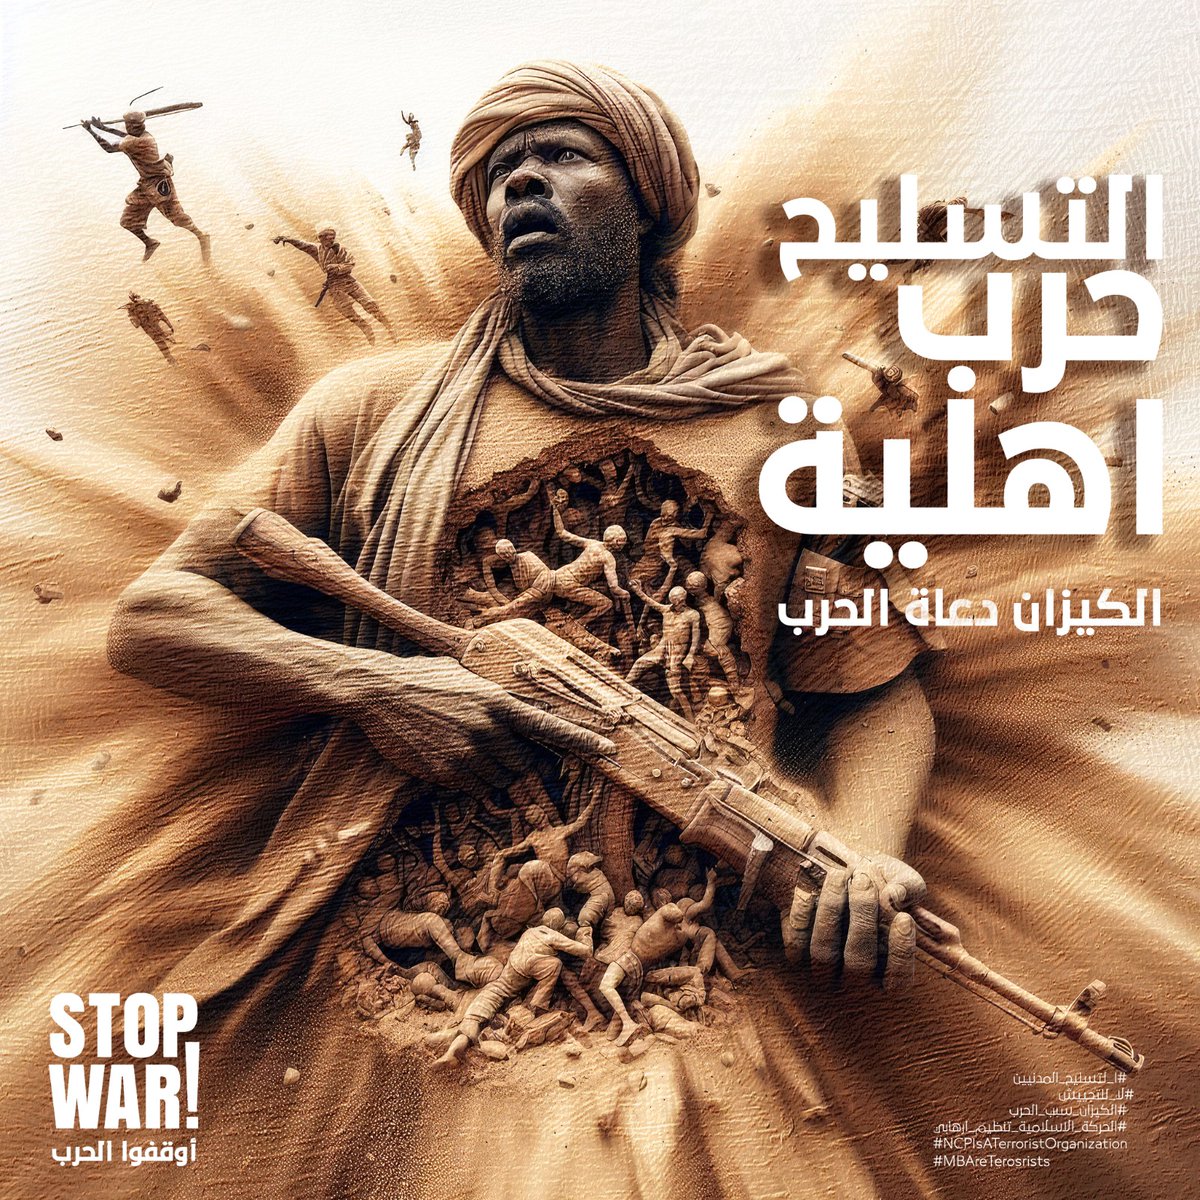 #لا_للحرب
#StopWarInSudan
#NCPIsATerroristOrganization
#الكيزان_سبب_الحرب
#لا_لتسليح_المواطنين